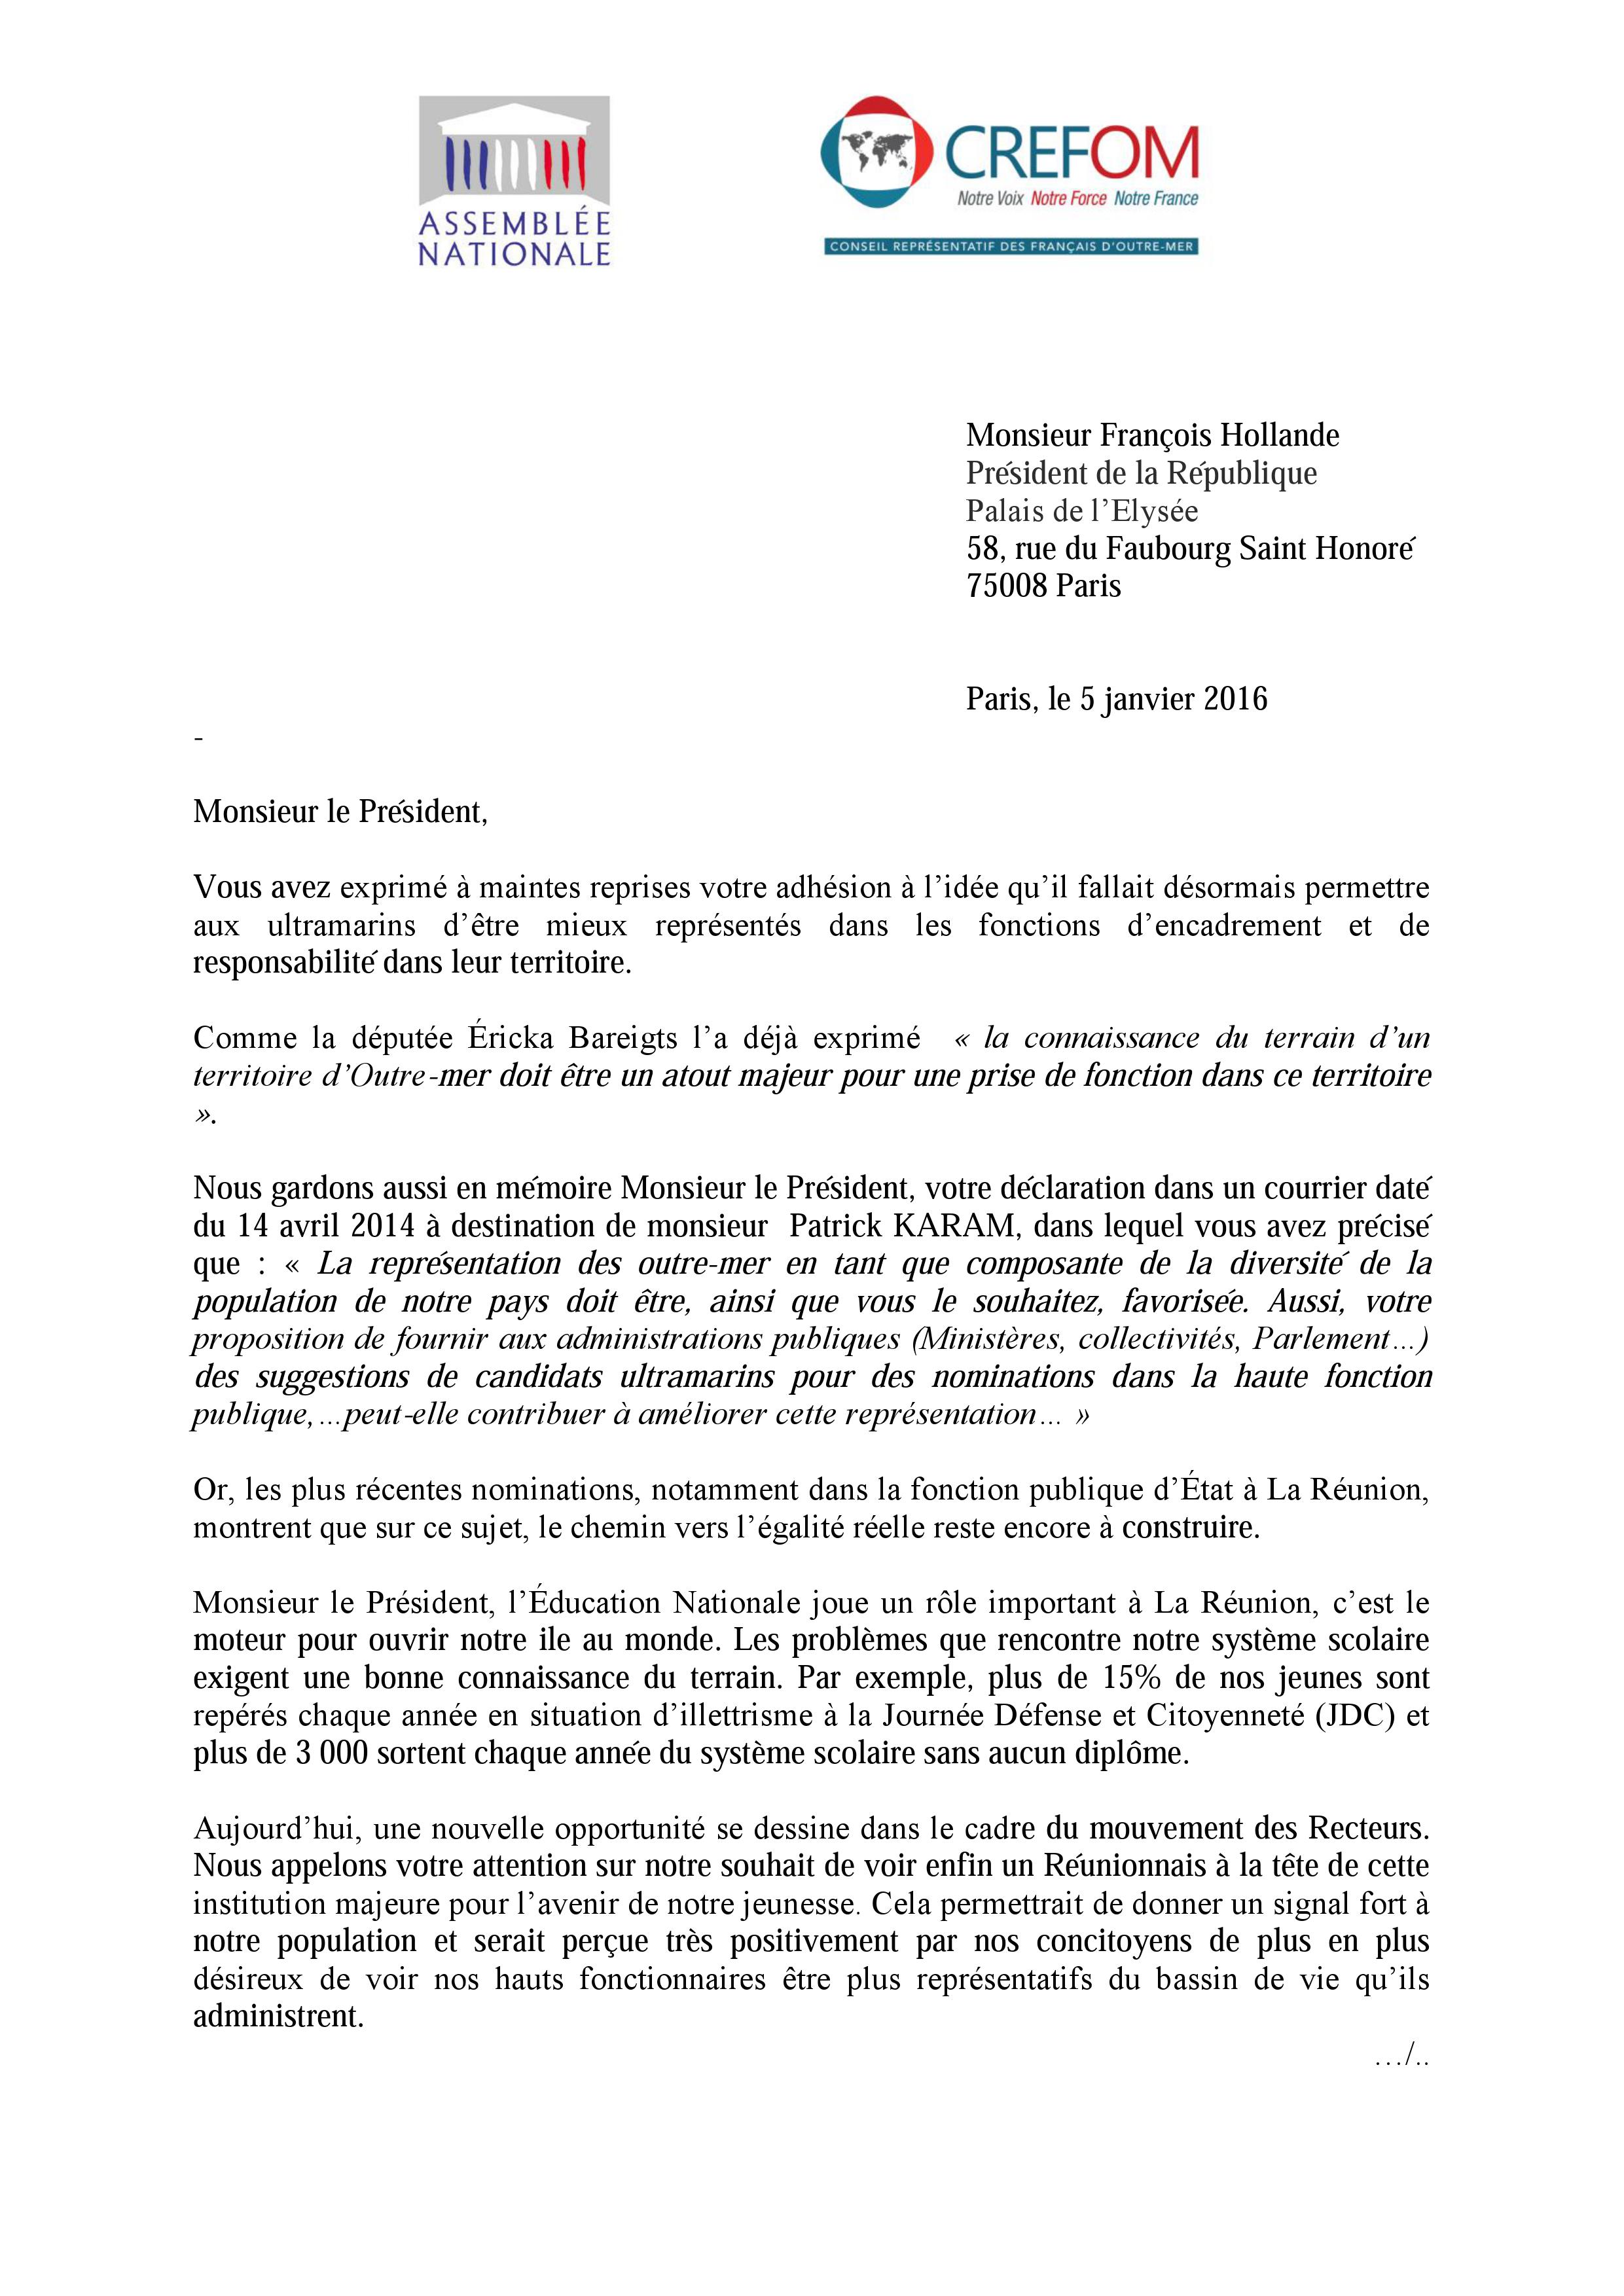 "Nomination d’un recteur réunionnais : Le CREFOM obtient gain de cause"